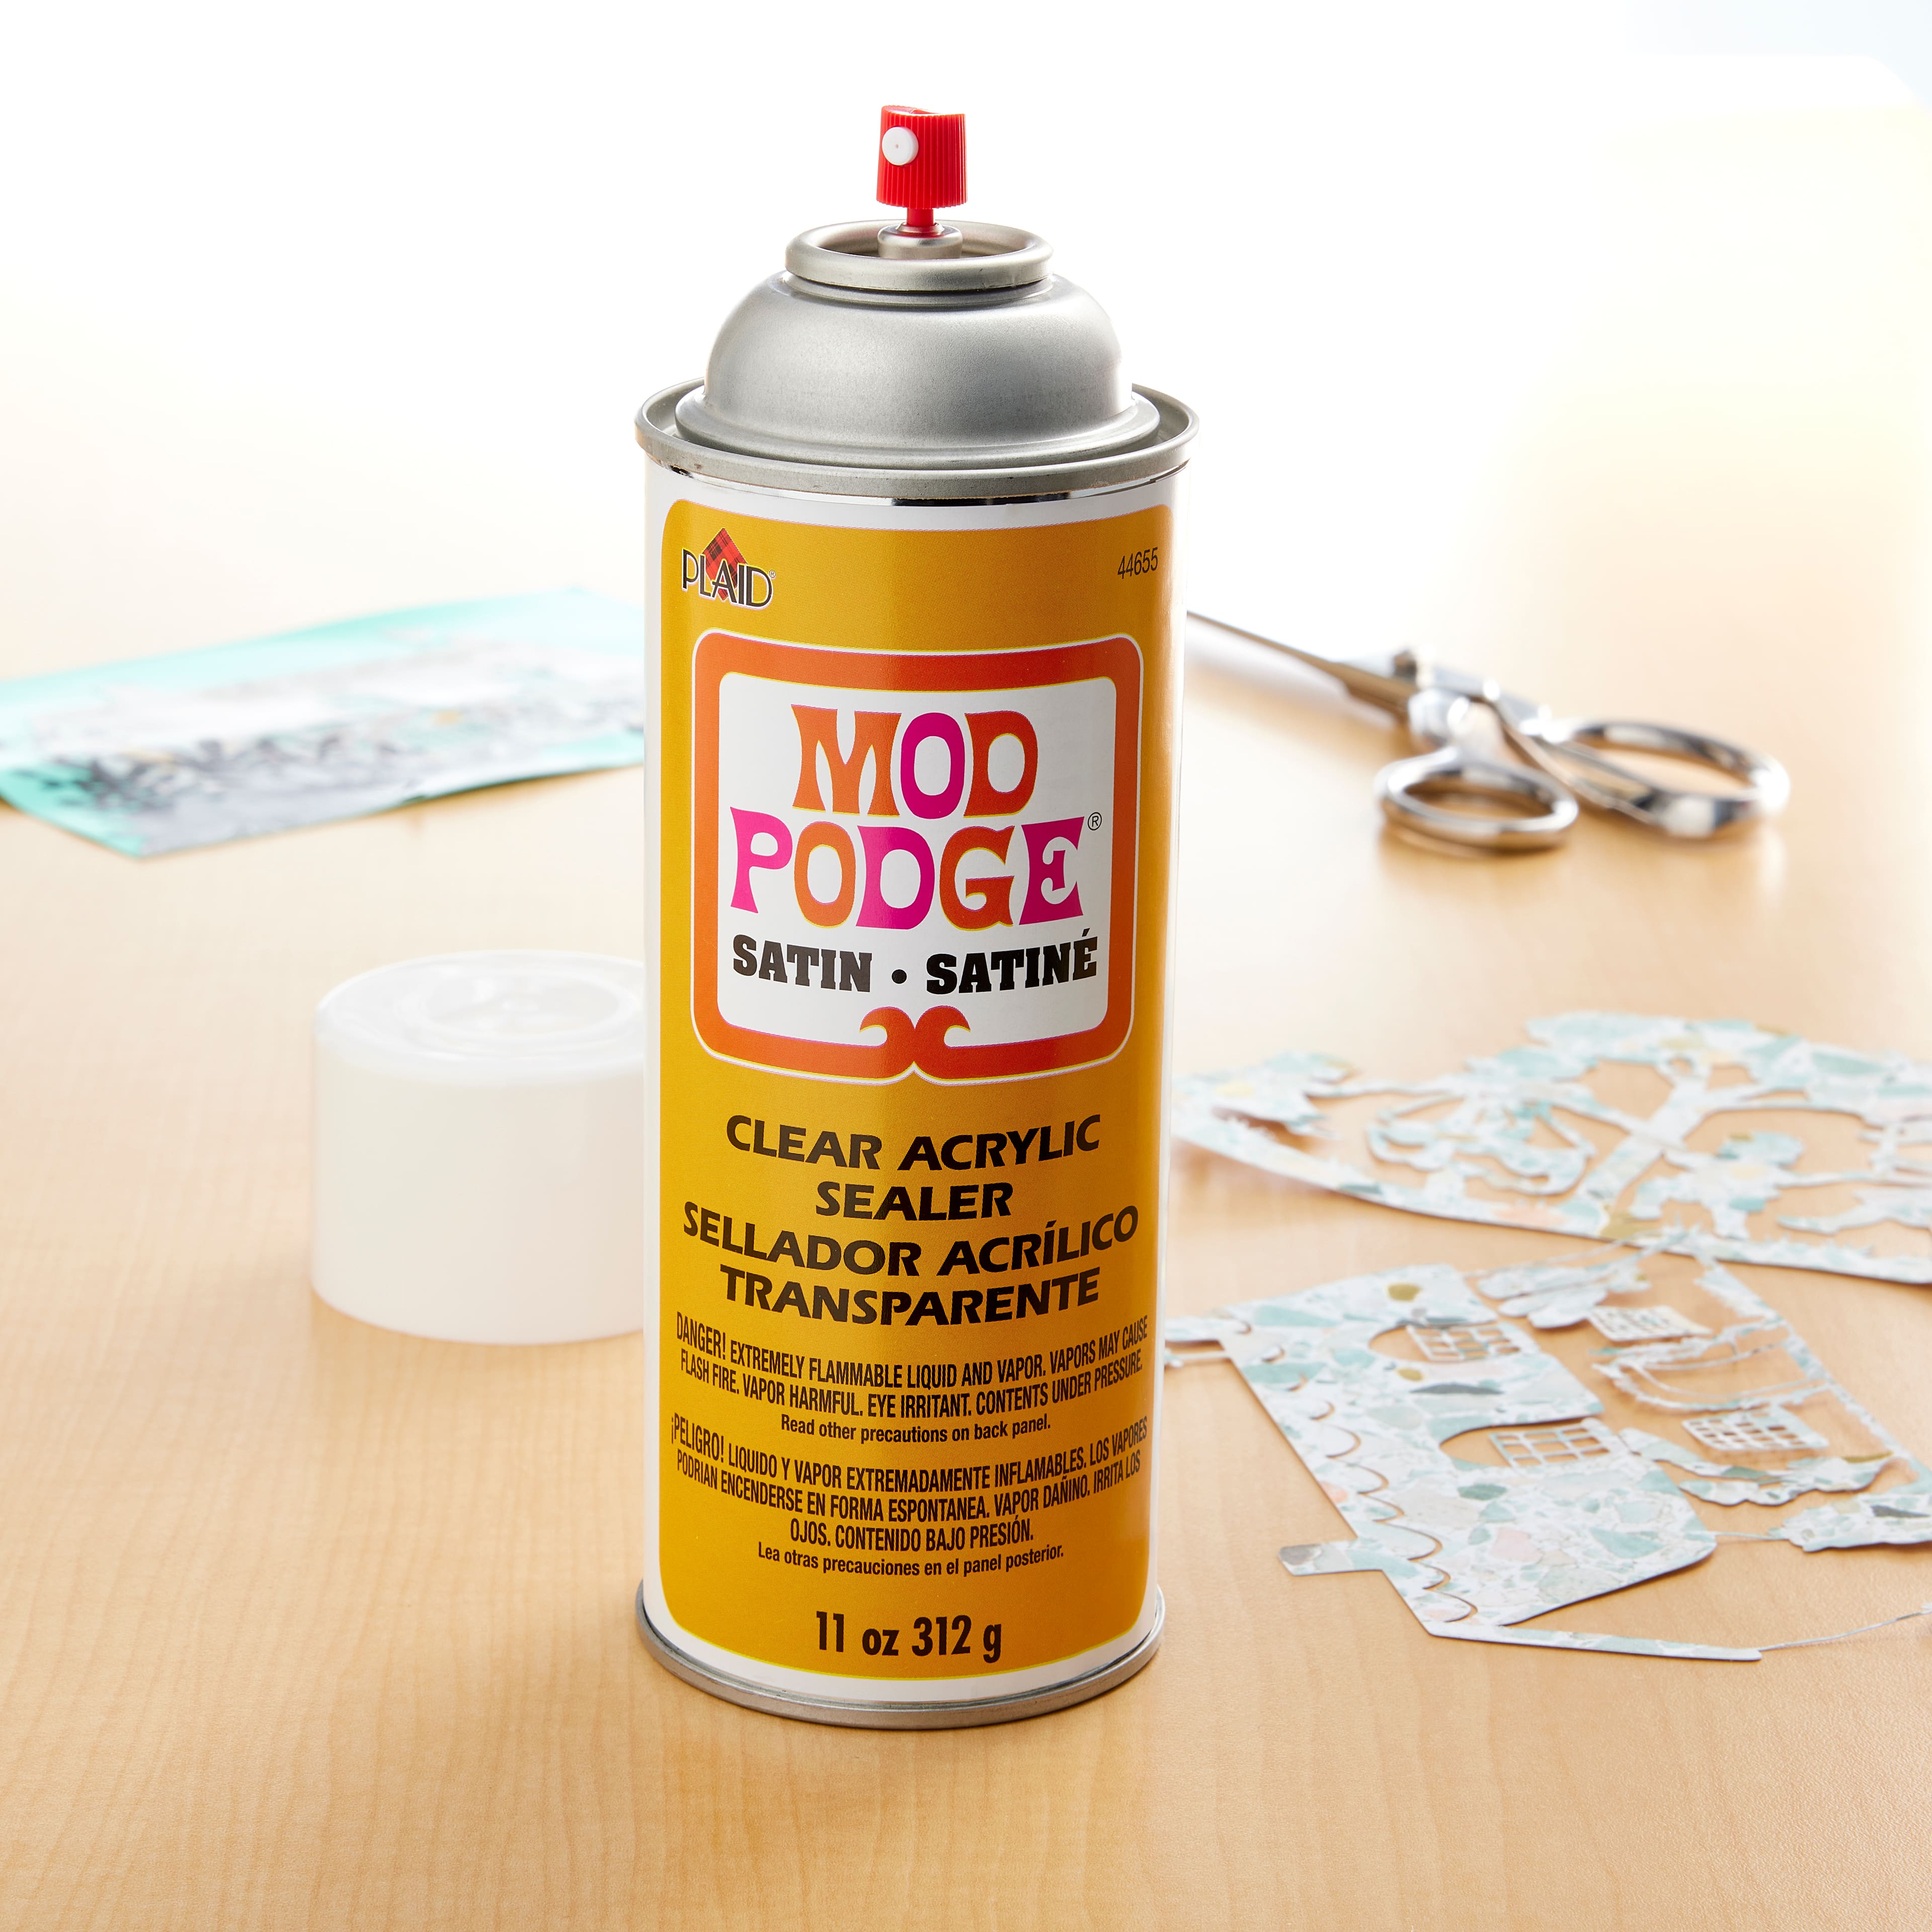 Plaid Mod Podge Clear Acrylic Sealer